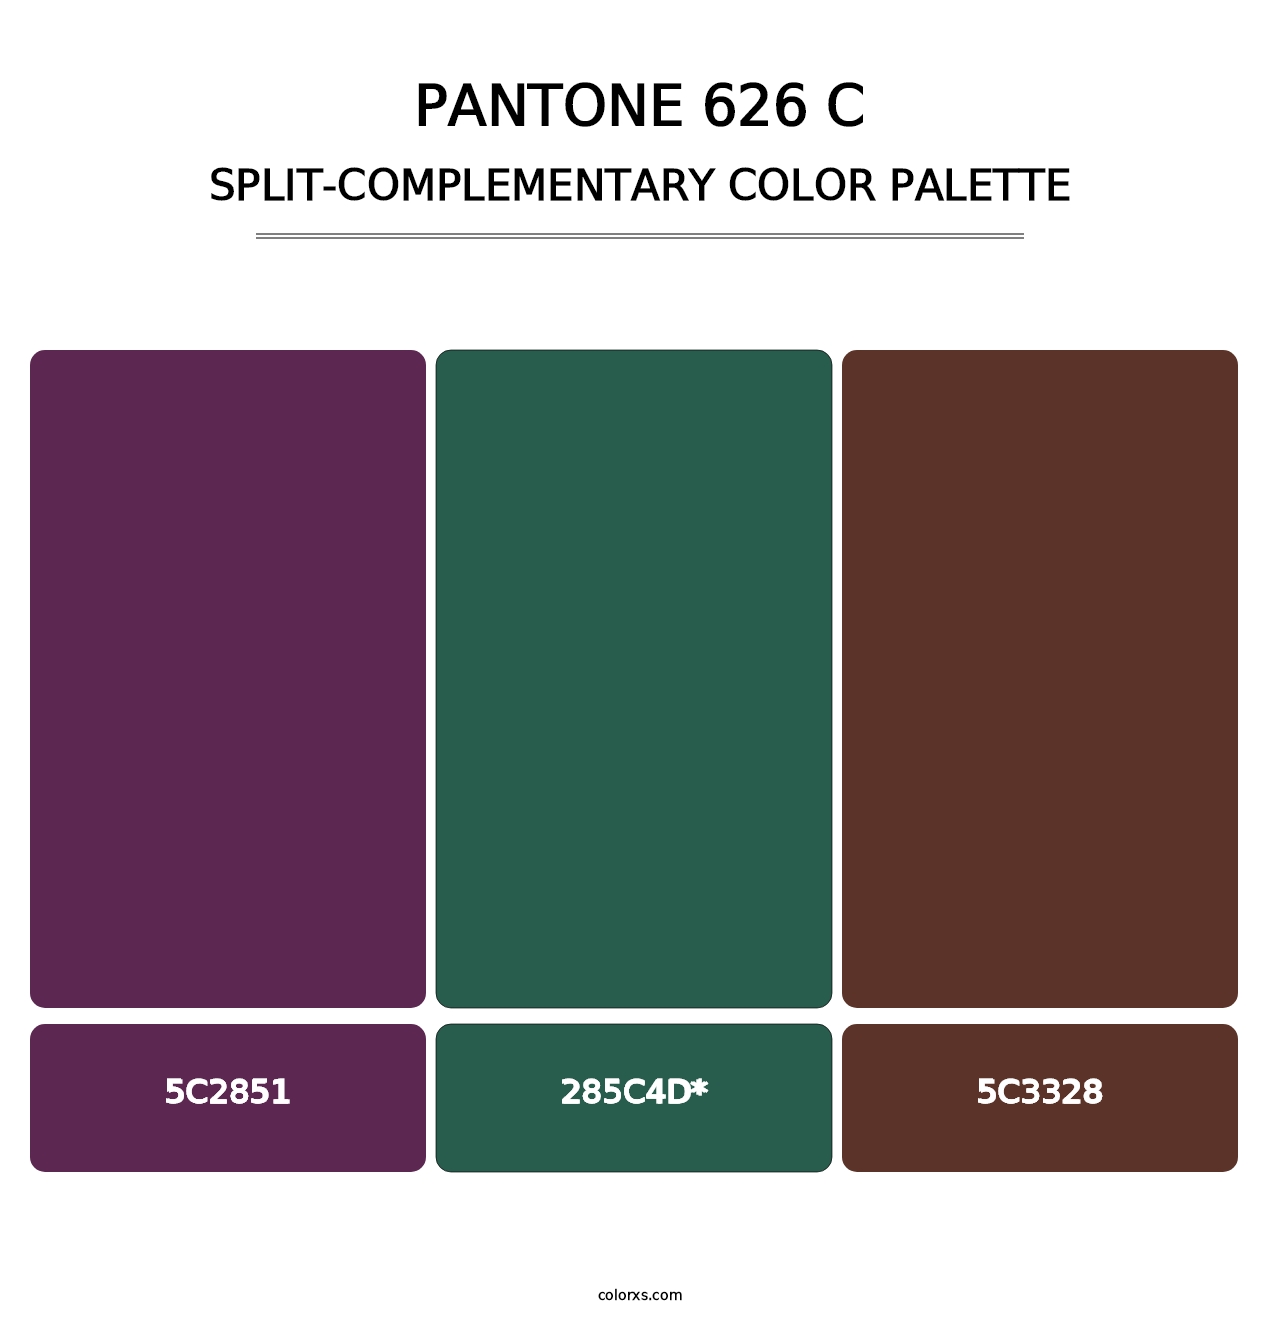 PANTONE 626 C - Split-Complementary Color Palette